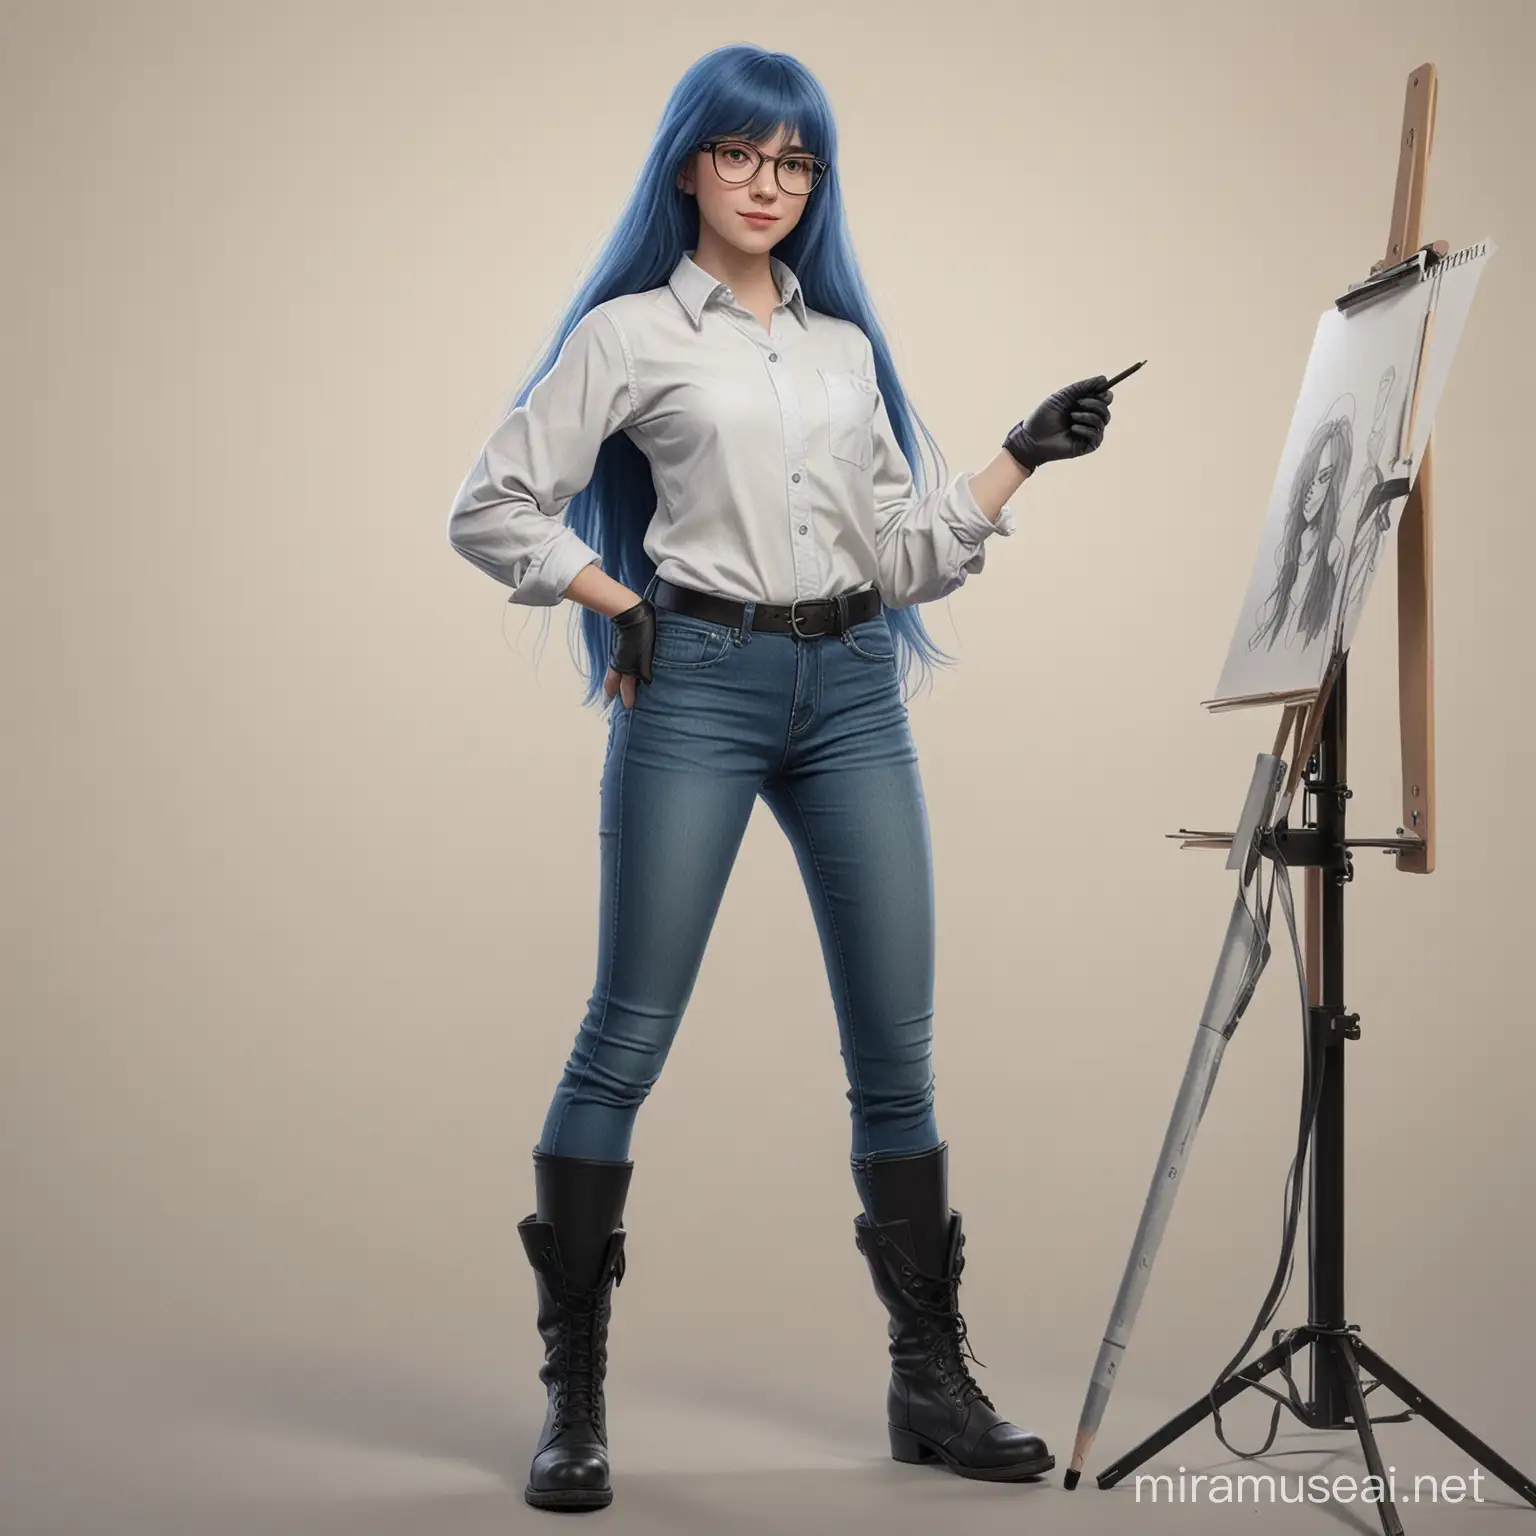 Una estudiante de animación, con pelo largo color azul y fleco, que use lentes, que use playera de manga larga, que use jeans, que use botas negras, que use un guante para dibujar en una sola mano, que sostenga un lápiz para arte digital.